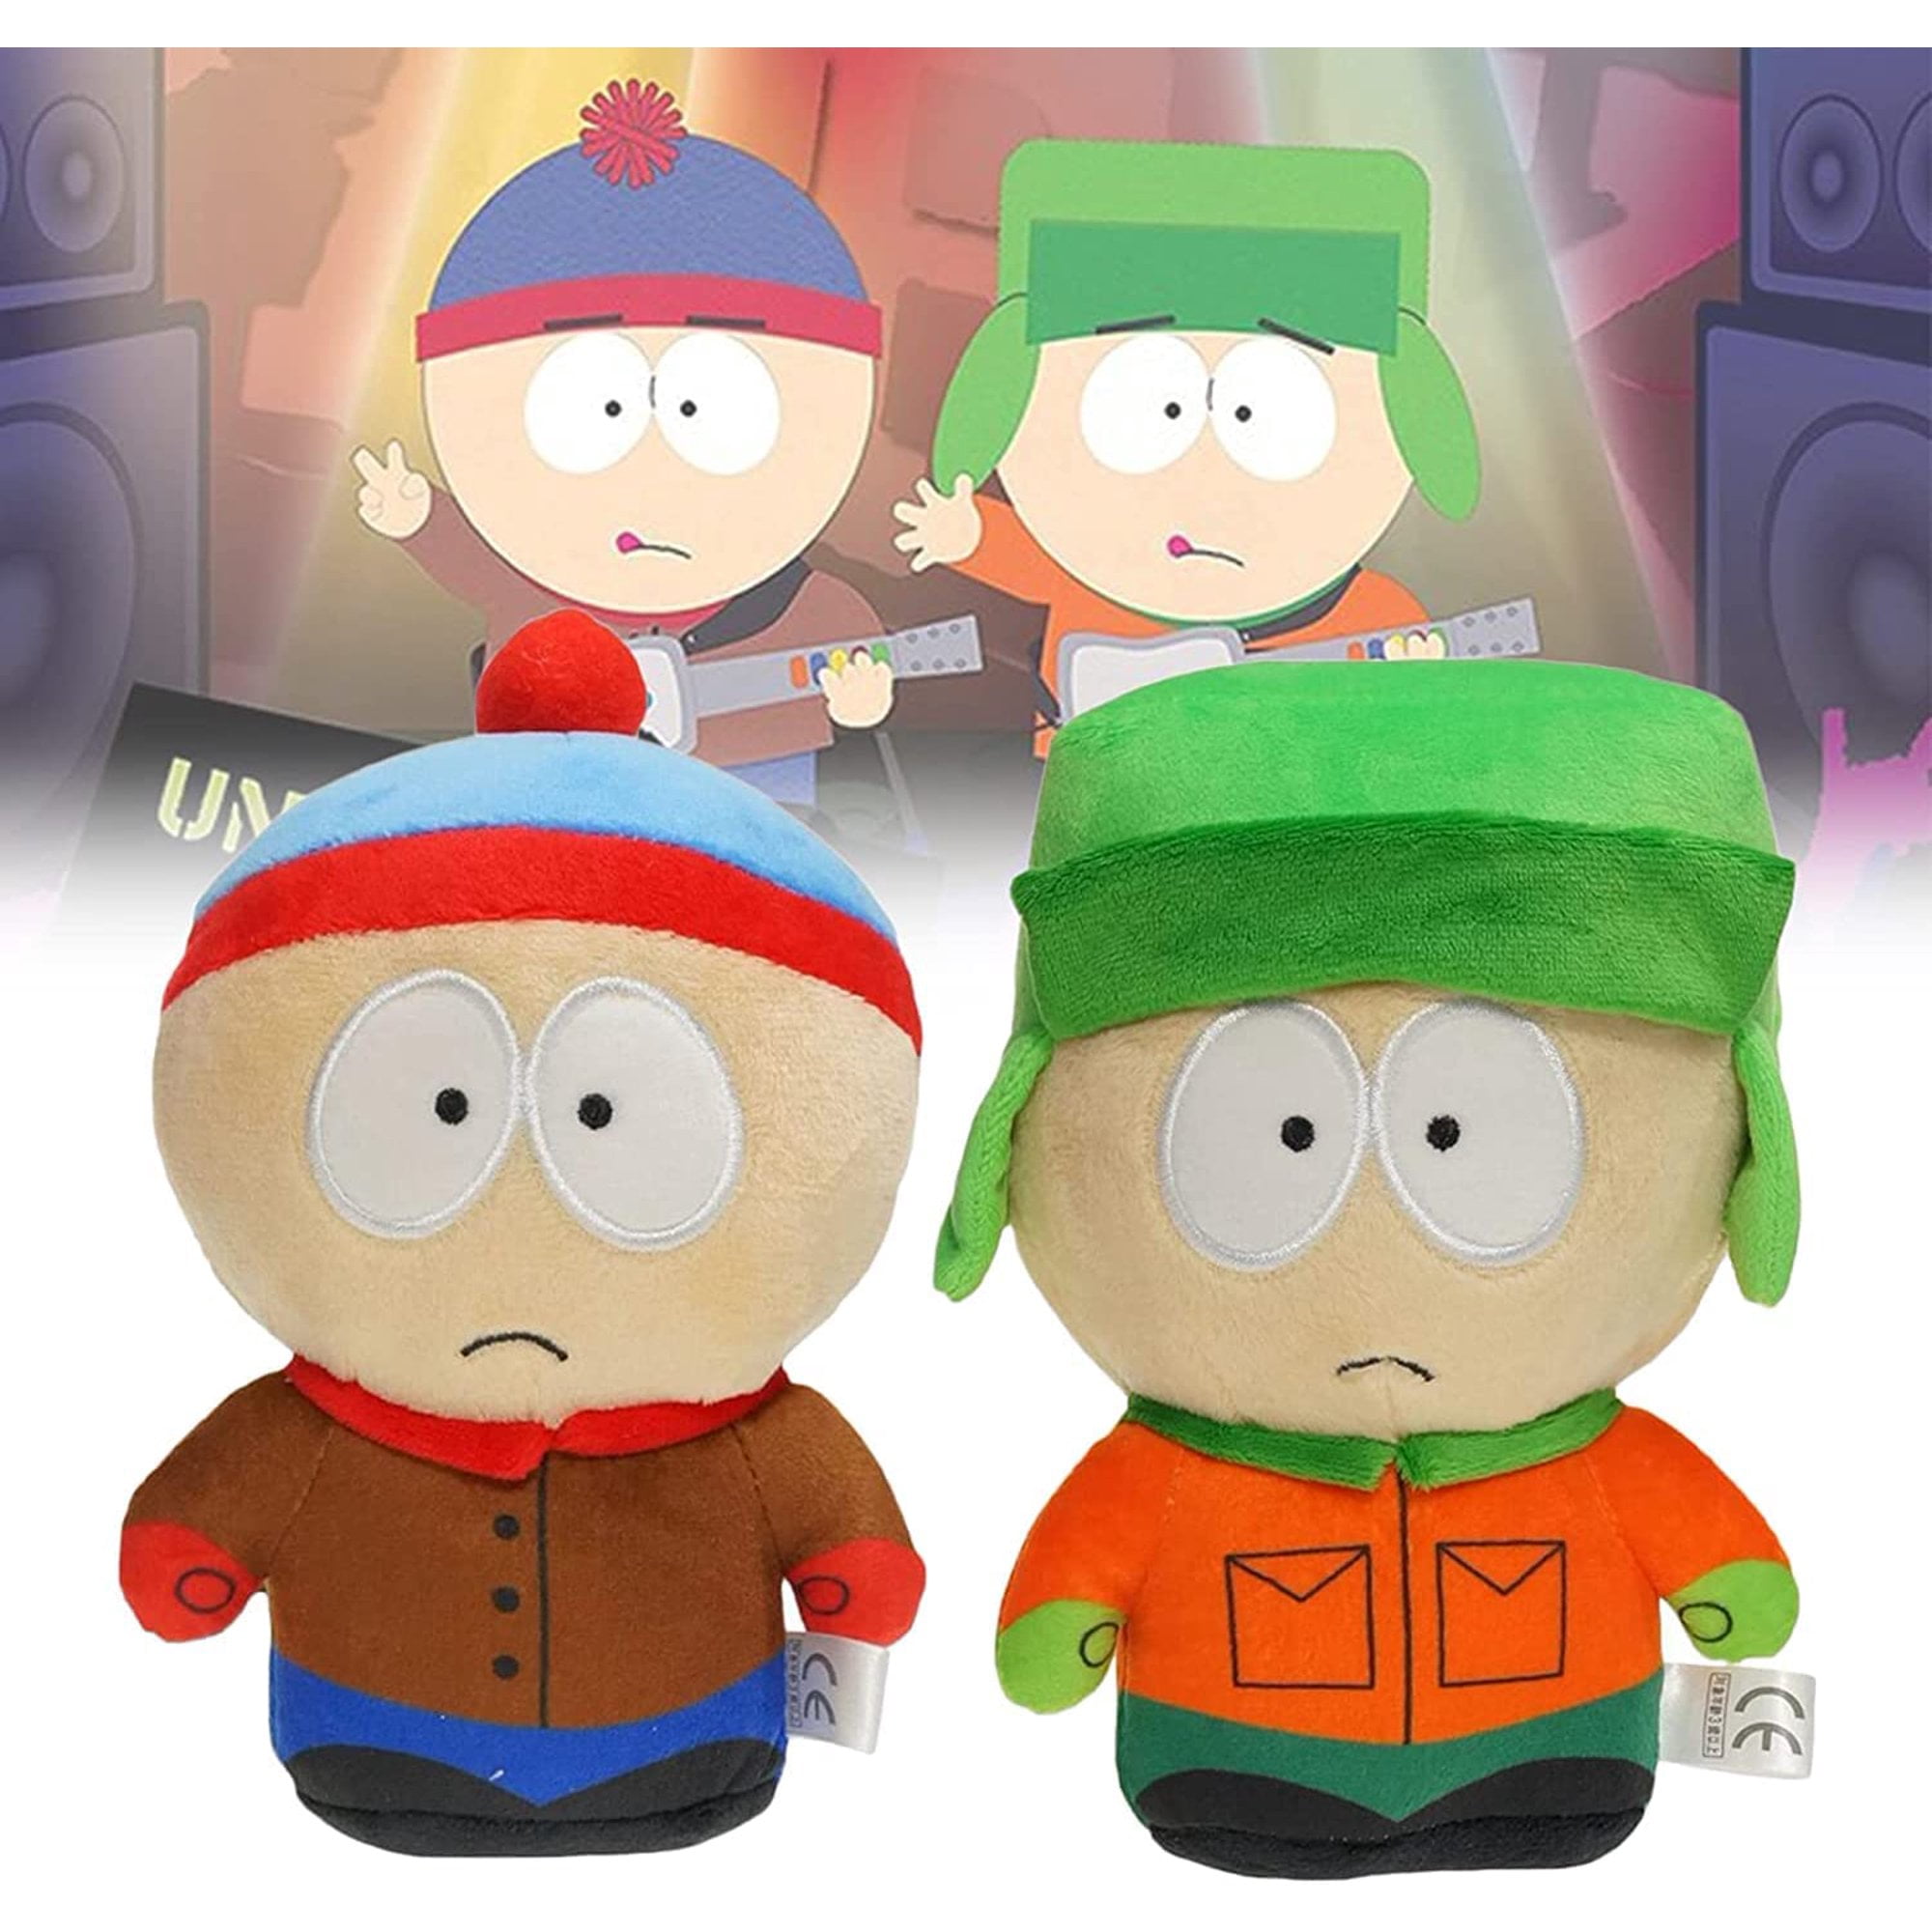 South Park - Anime